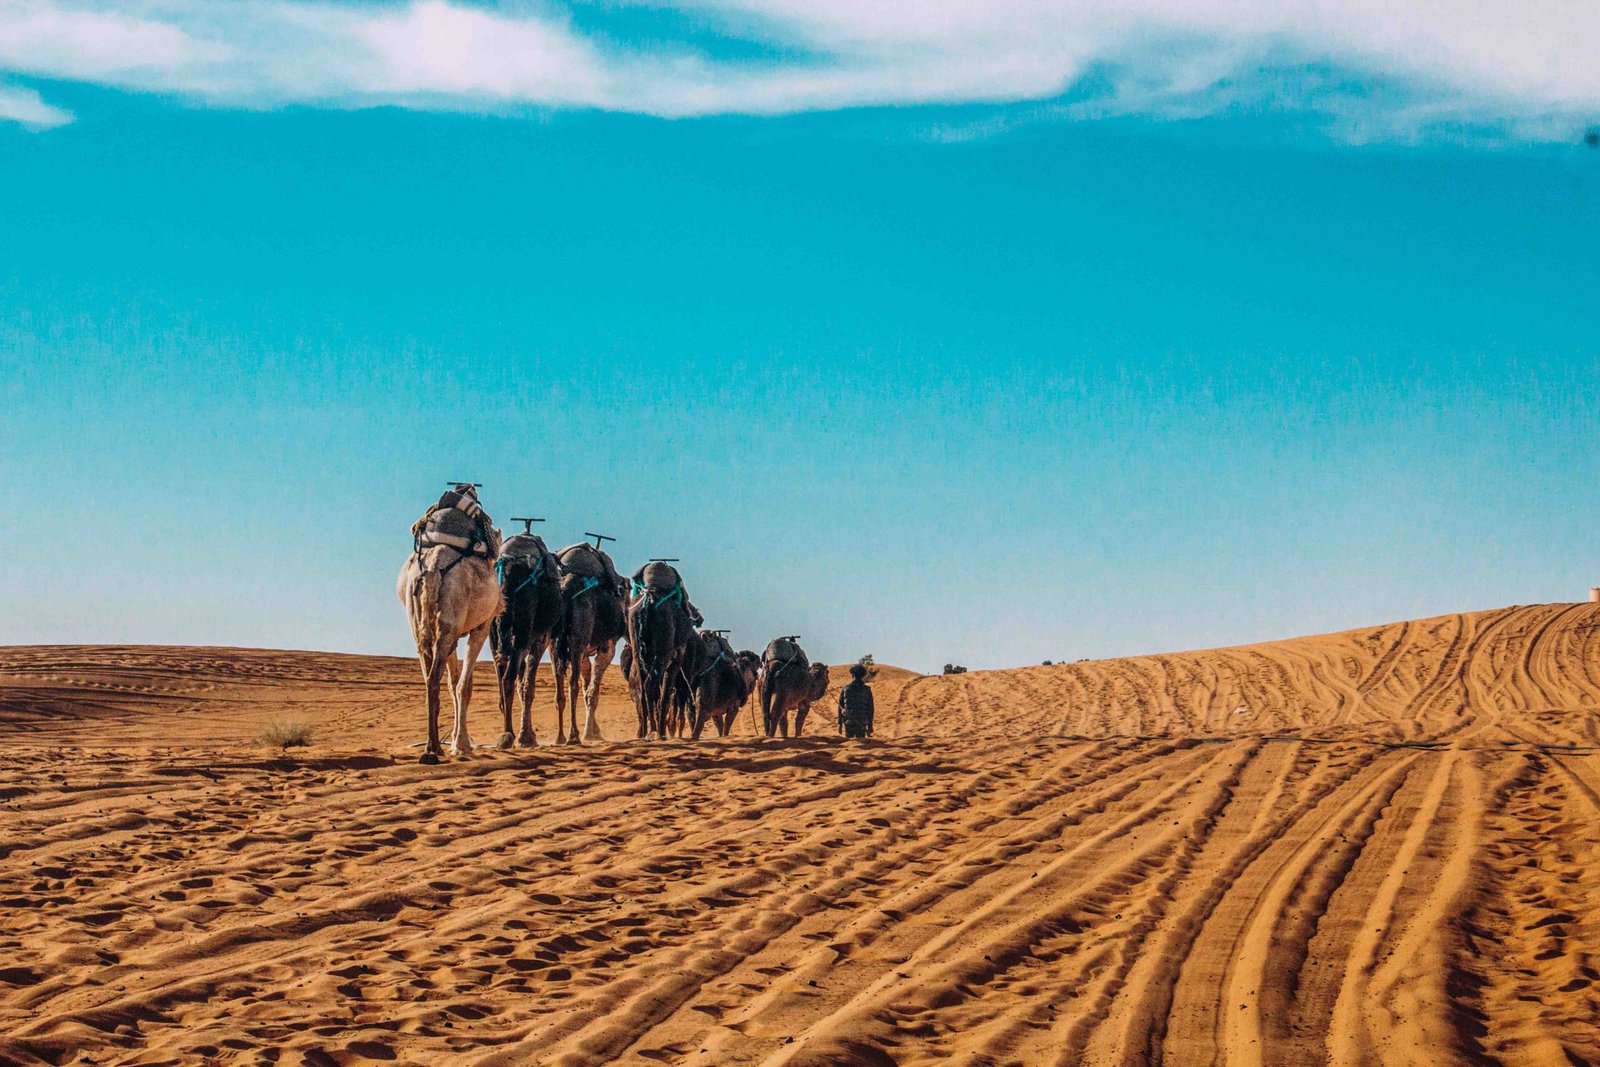 Take a Hot Air Balloon Ride Over Morocco